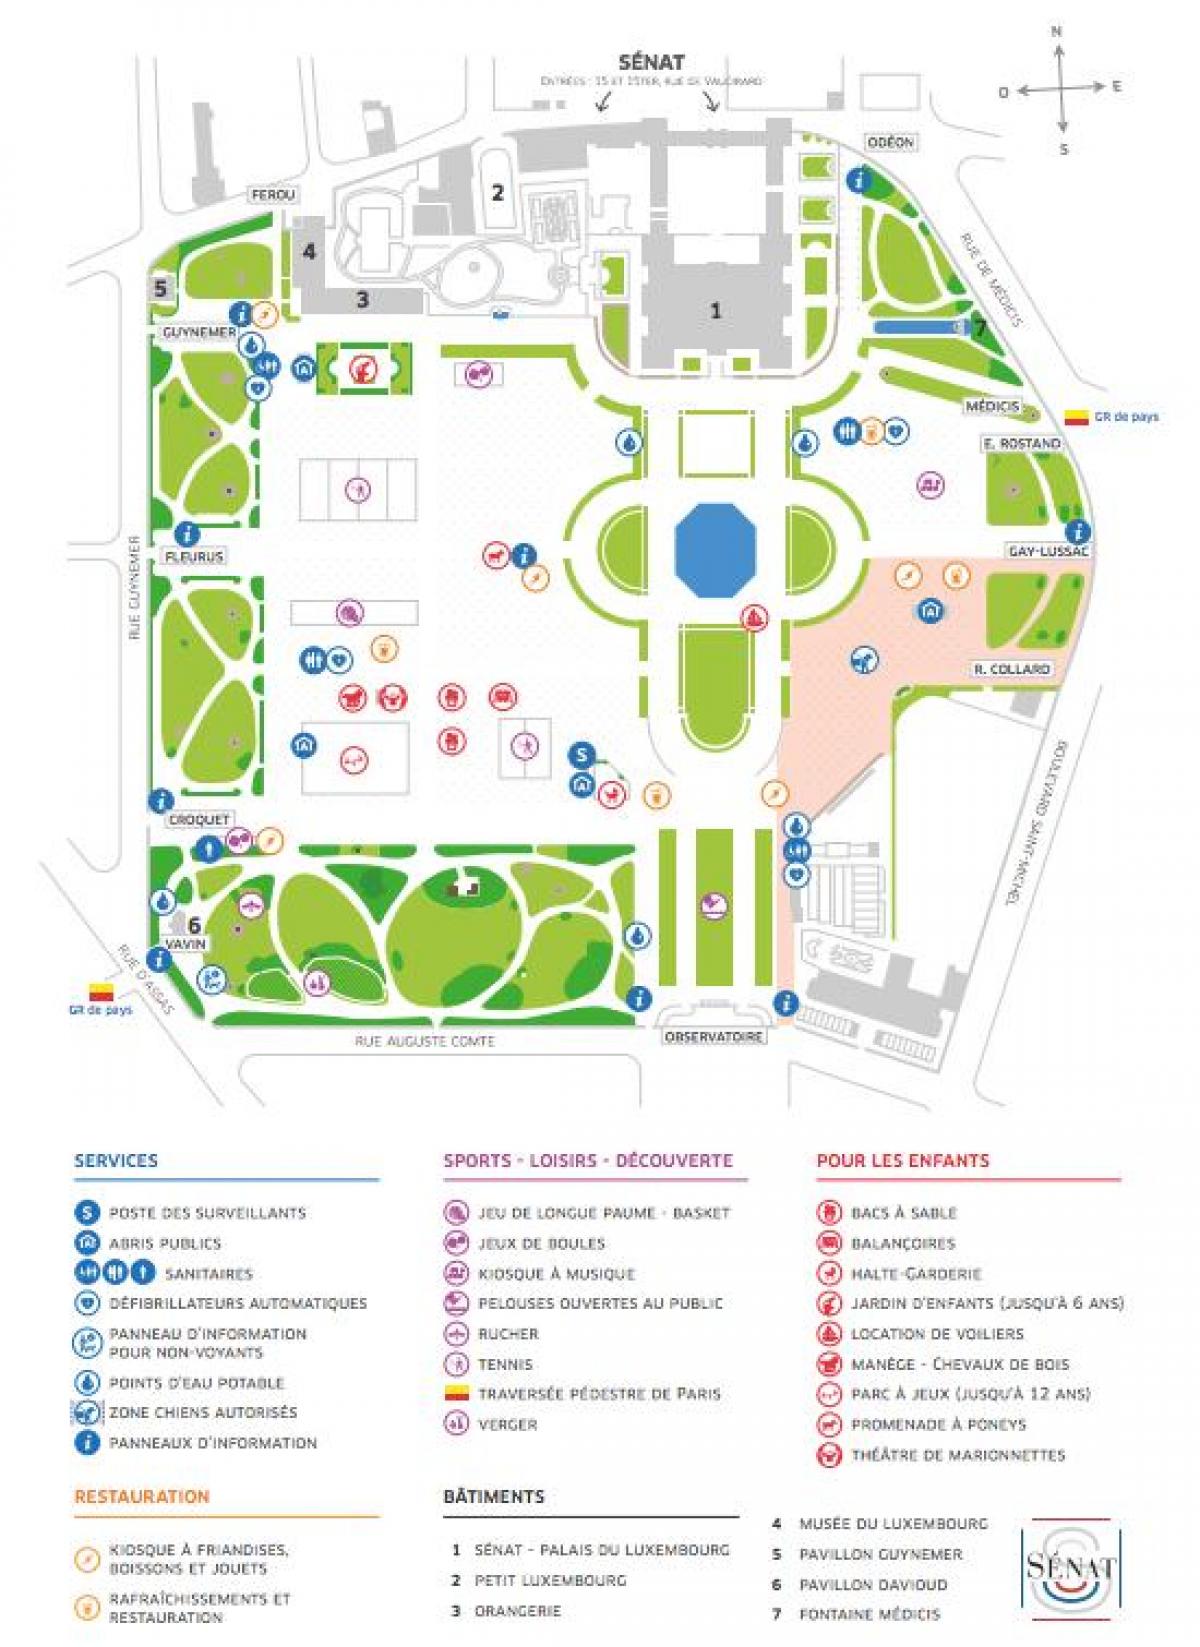 خريطة حديقة لوكسمبورغ